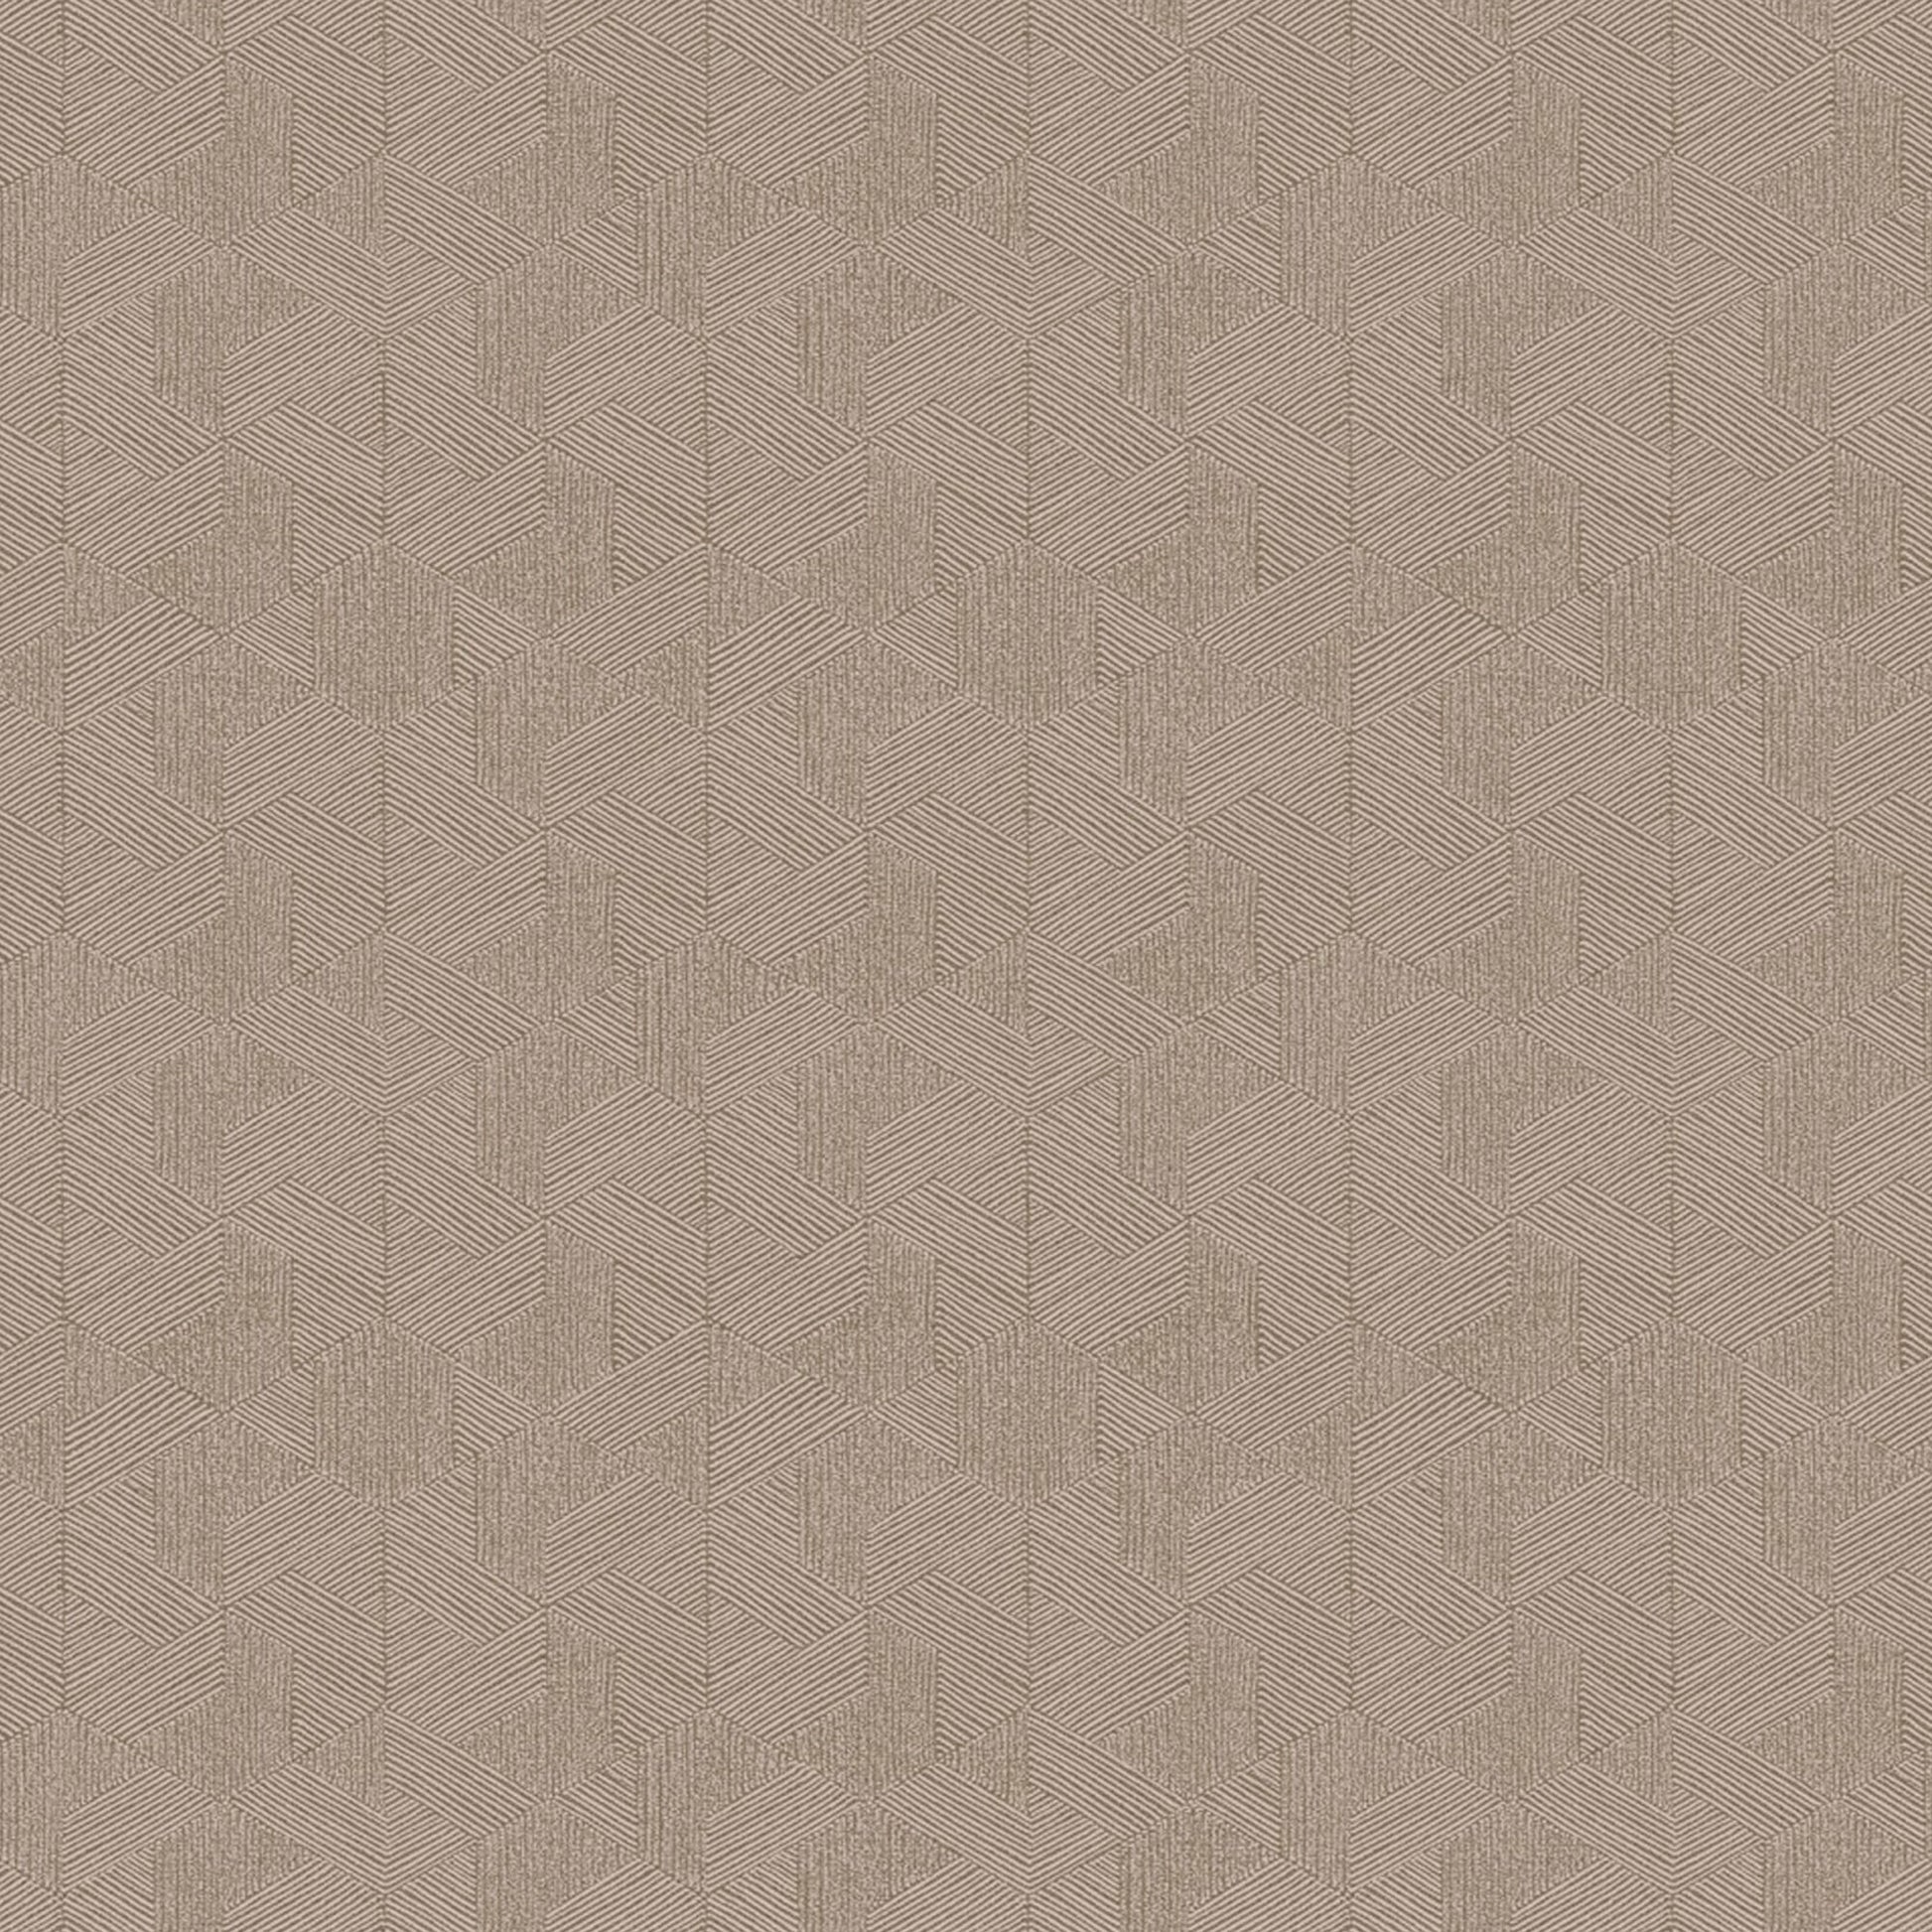 Purchase JF Wallpaper Pattern# 8218 37W9331 Brown Geometric Wallpaper